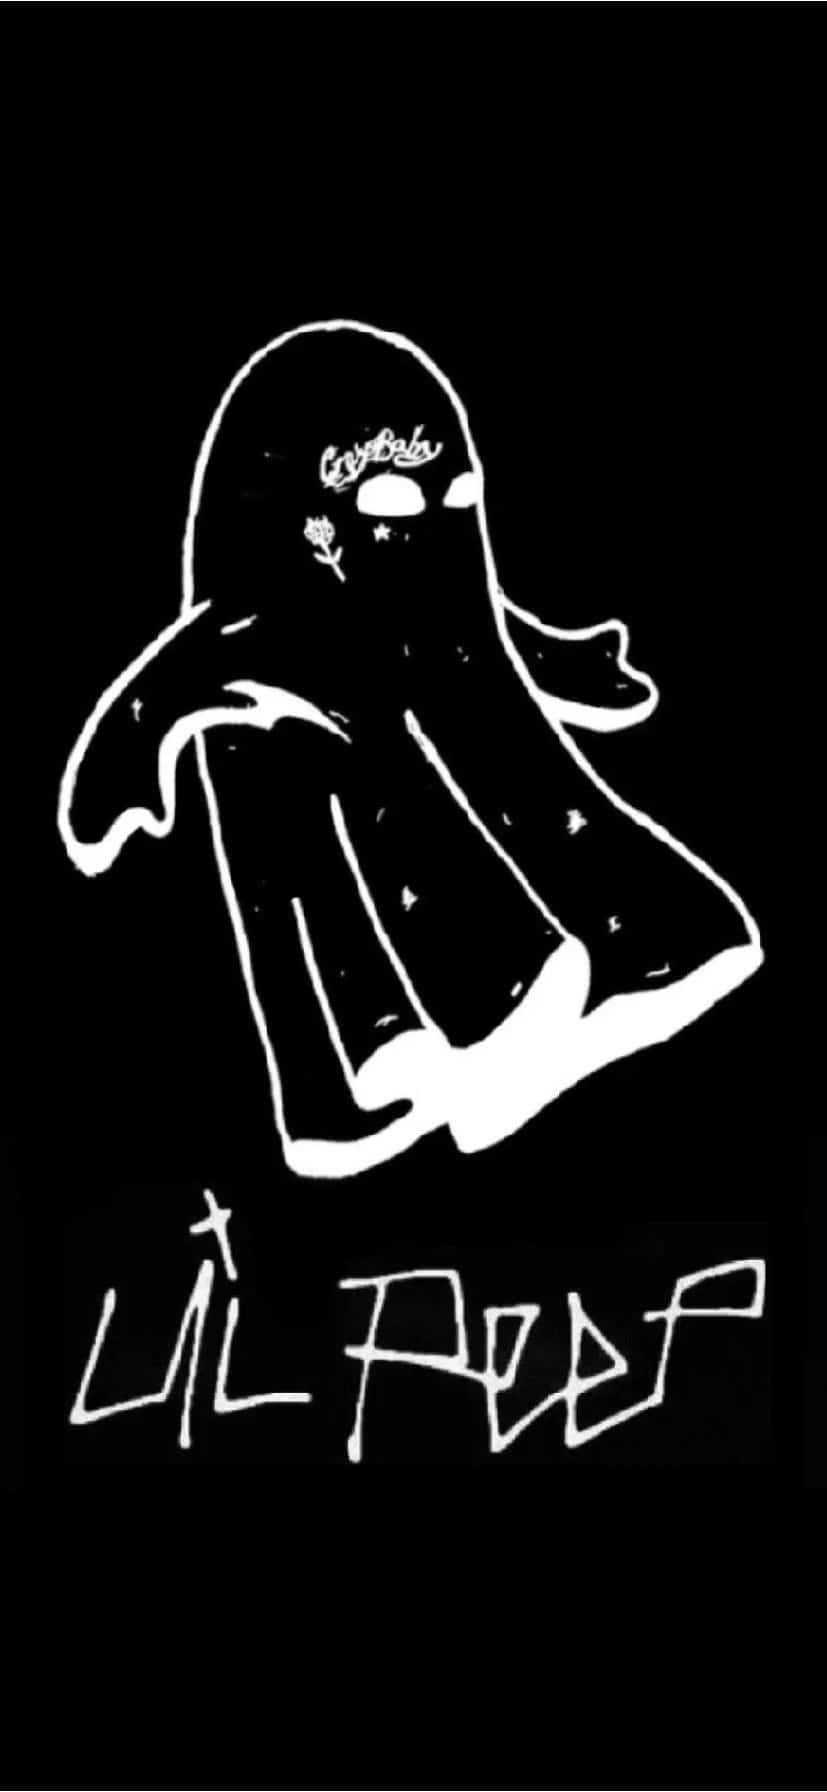 Dasikonische Lil Peep Logo, Das Entworfen Wurde, Um Den Einzigartigen Stil Des Sängers Darzustellen. Wallpaper